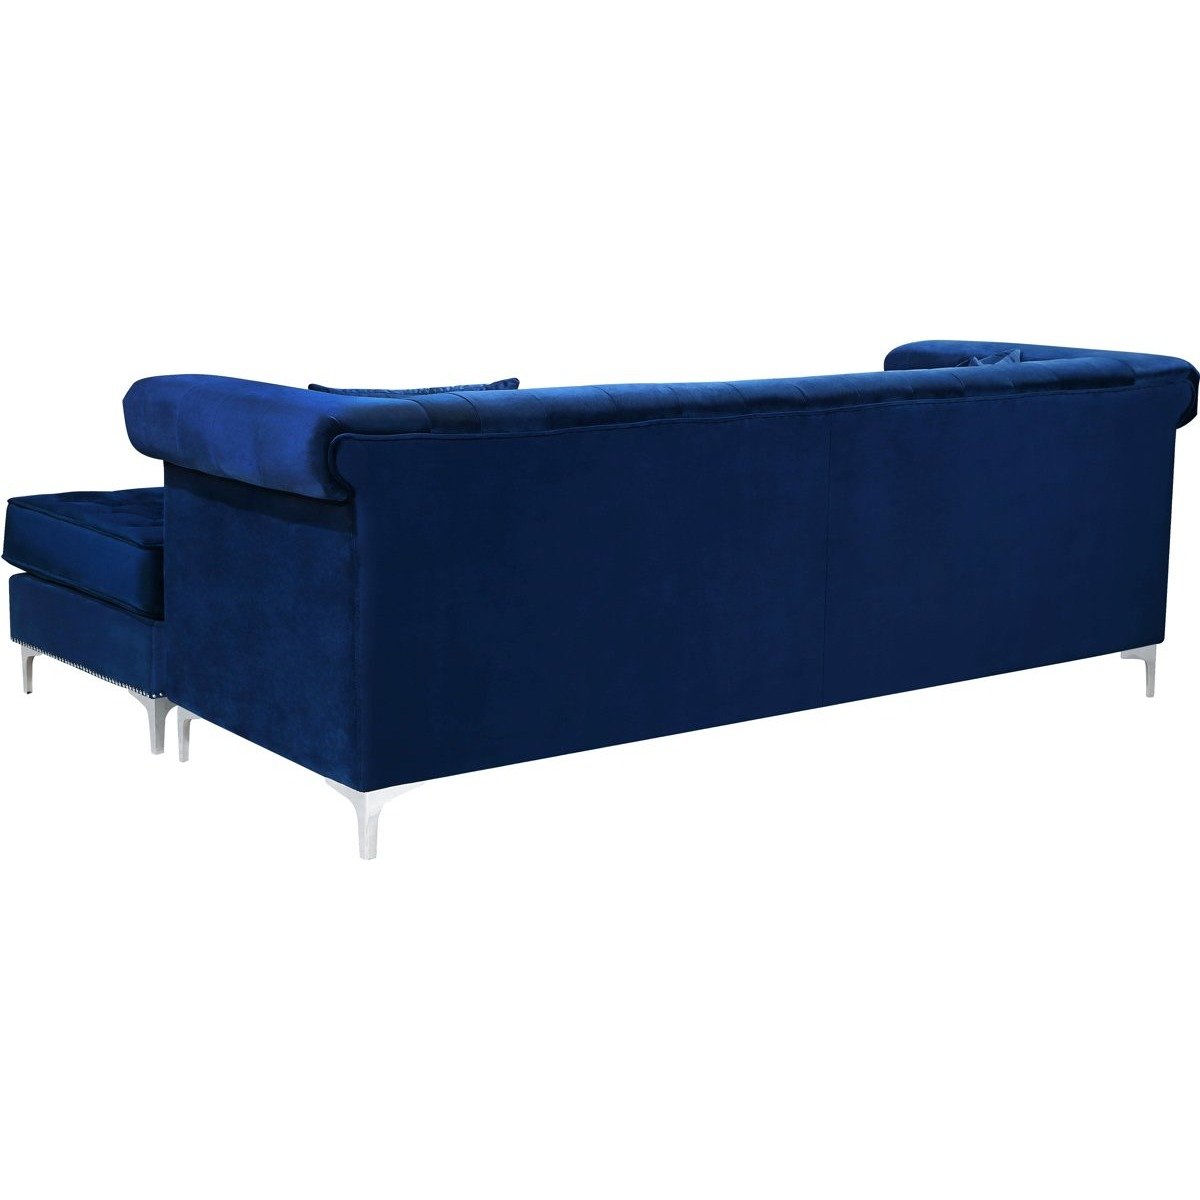 Meridian Furniture Damian Navy Velvet 2pc. Reversible Sectional